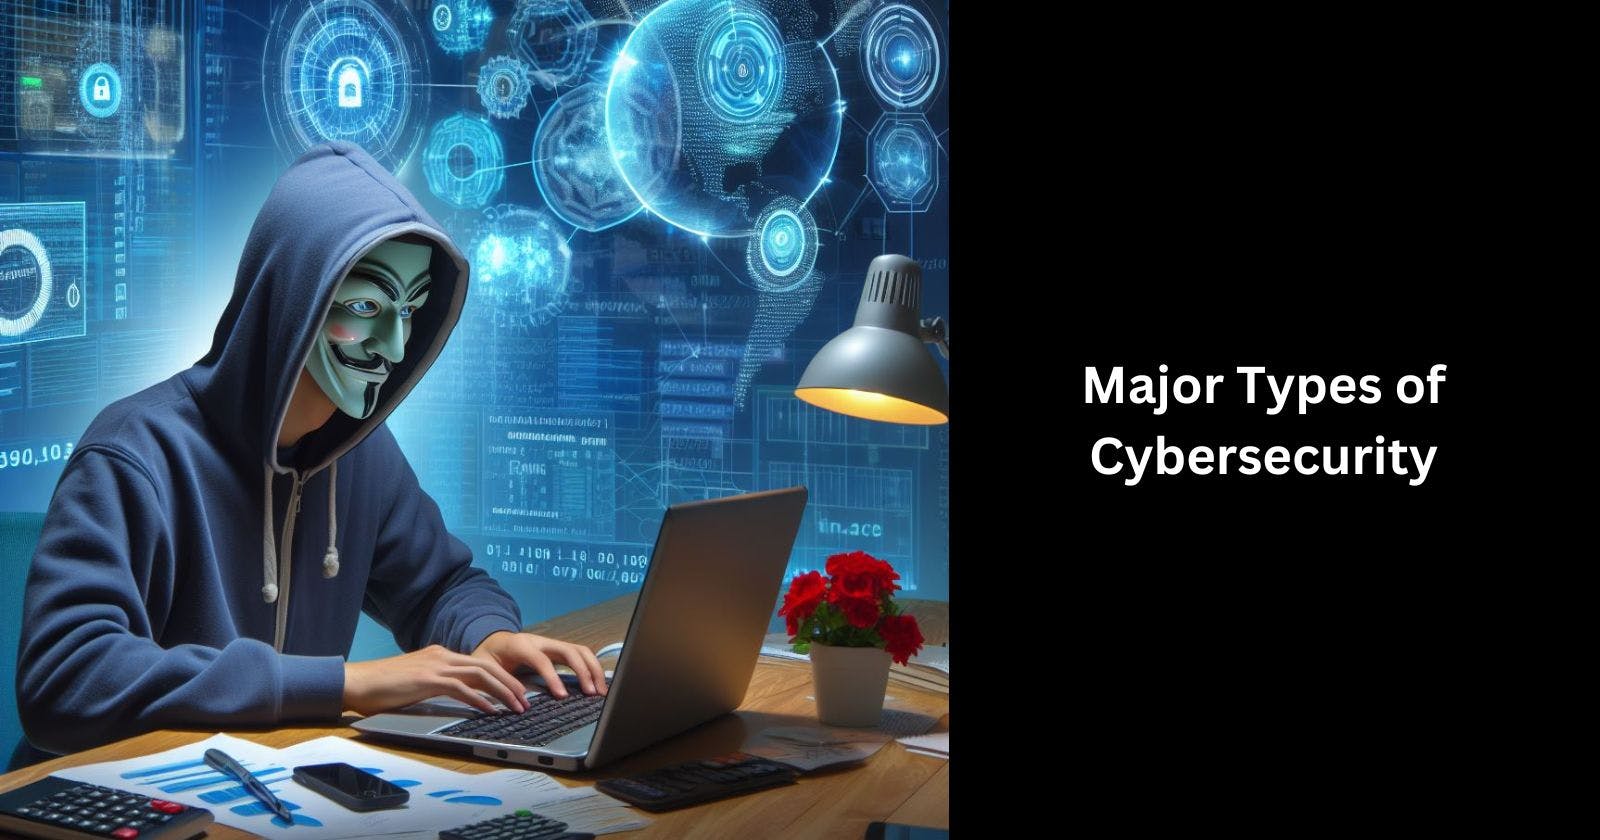 Understanding the Major Types of Cybersecurity